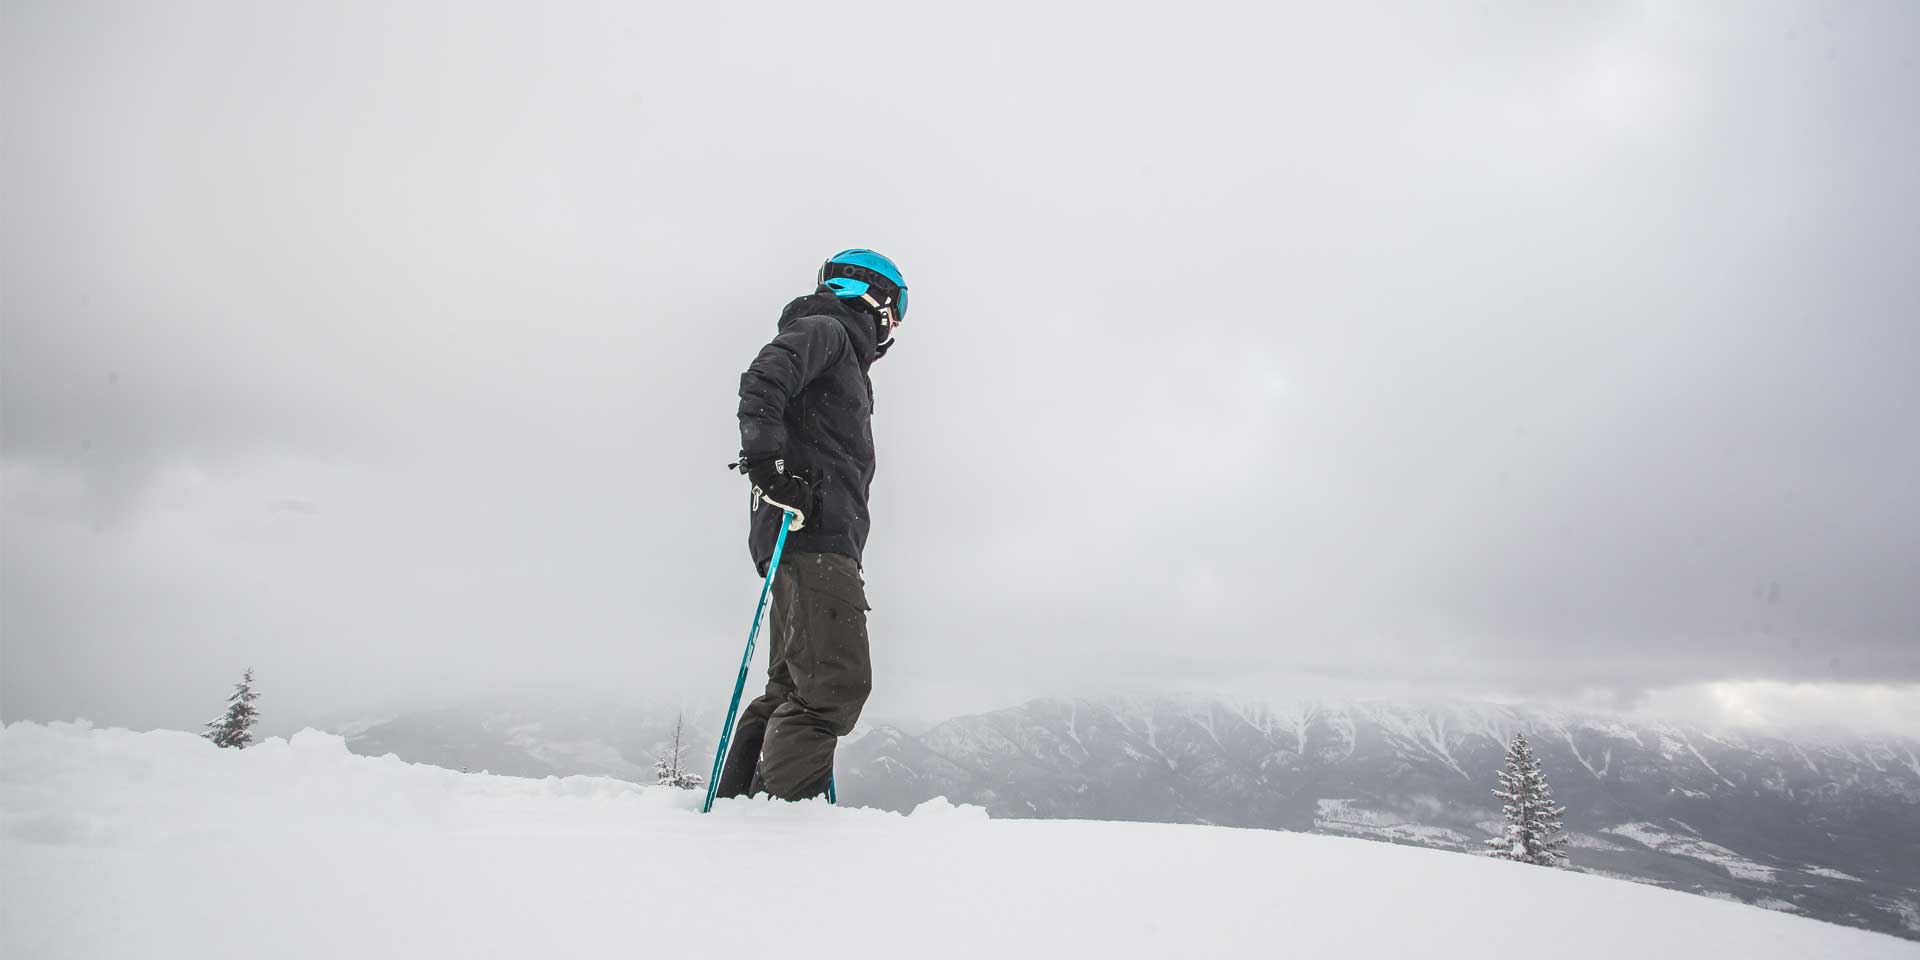 Skier-blue-helmet-scoping.jpg